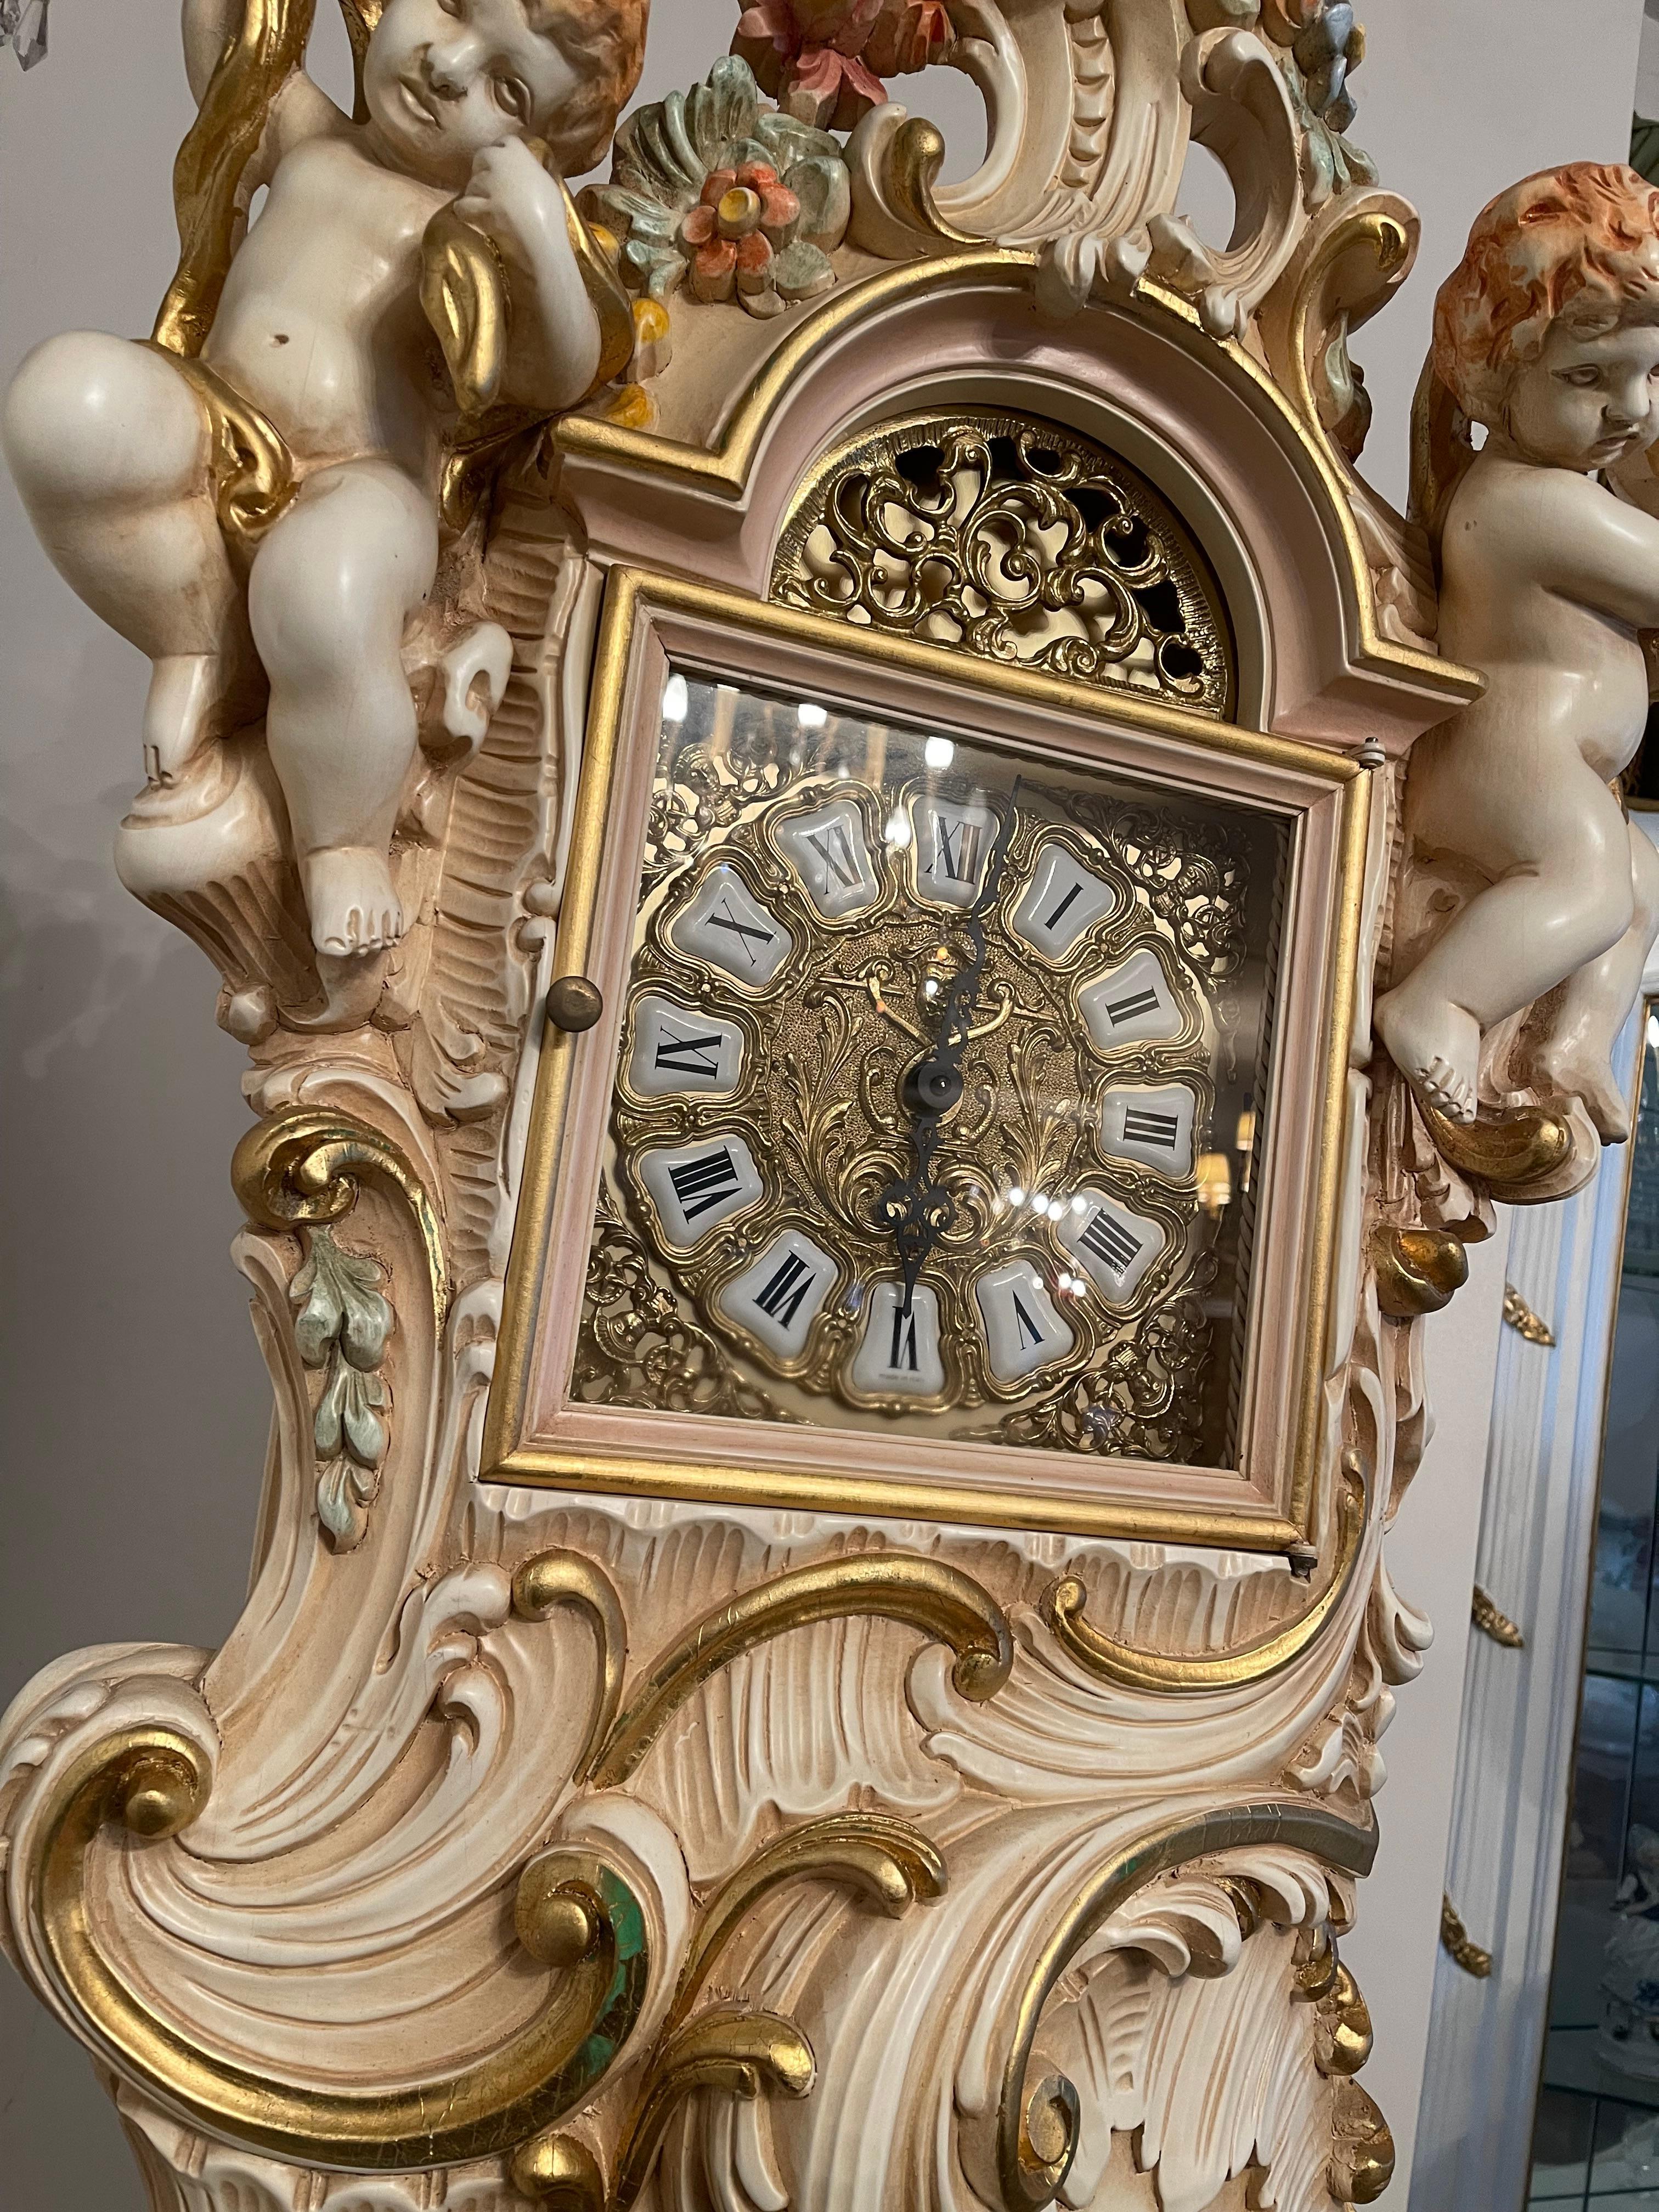  Orologio a Pendolo in Legno Laccato Style barocco veneziano 700 In Excellent Condition For Sale In Cantù, IT